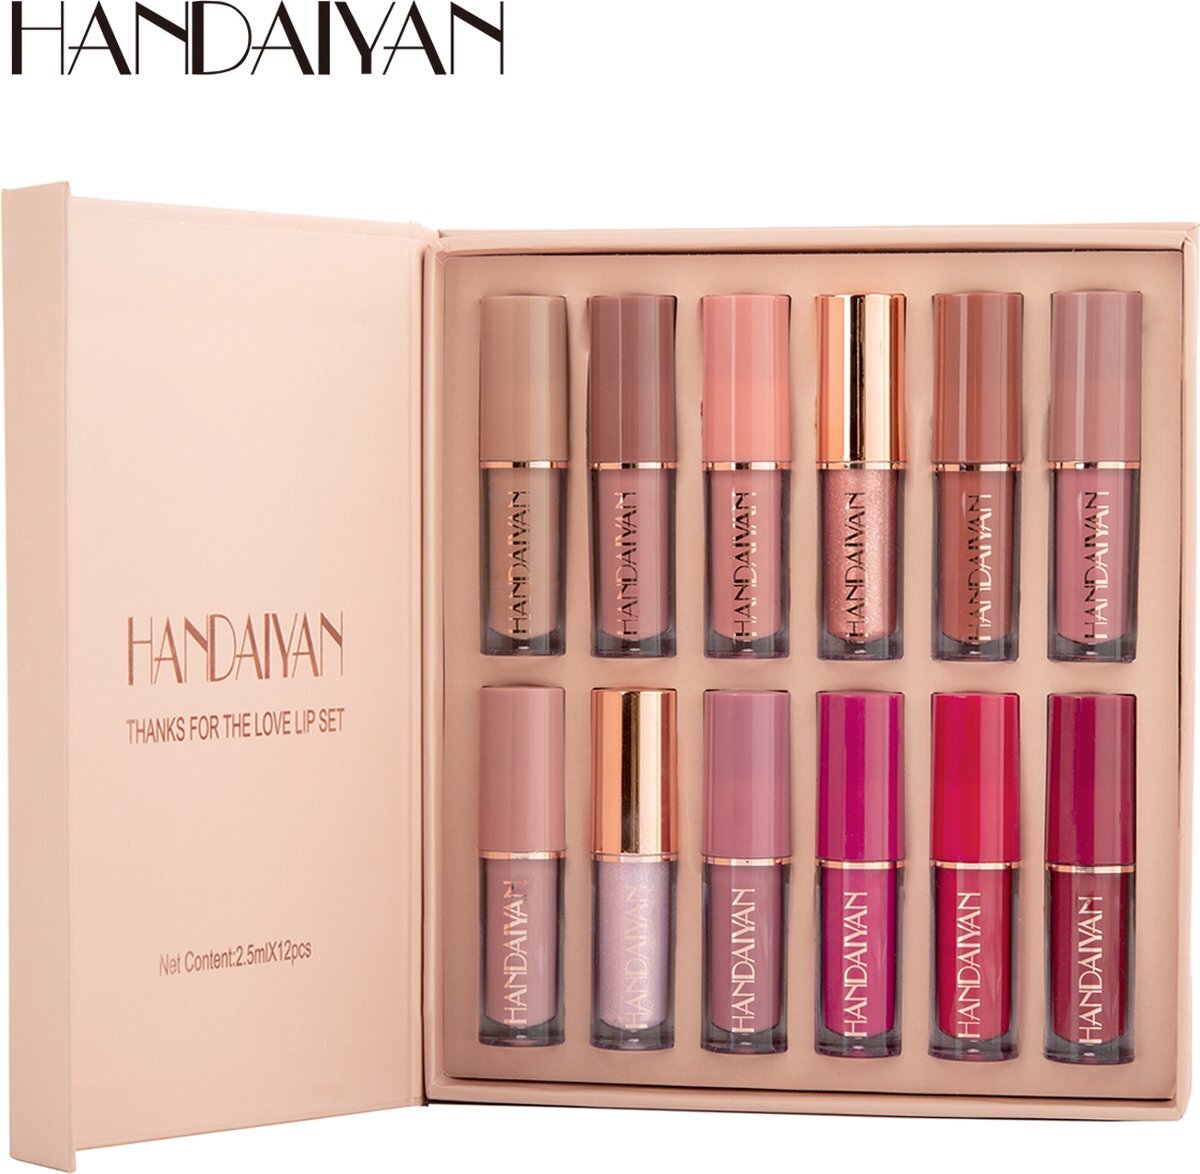 Handaiyan - Mini set van 12 - Liquid lipsticks - Matte lippenstift - Vloeibare lippenstift - Waterproof - Make up set - Geschenkset - Giftset - Lipstick - Lippenstift - Lipgloss - Lip gloss